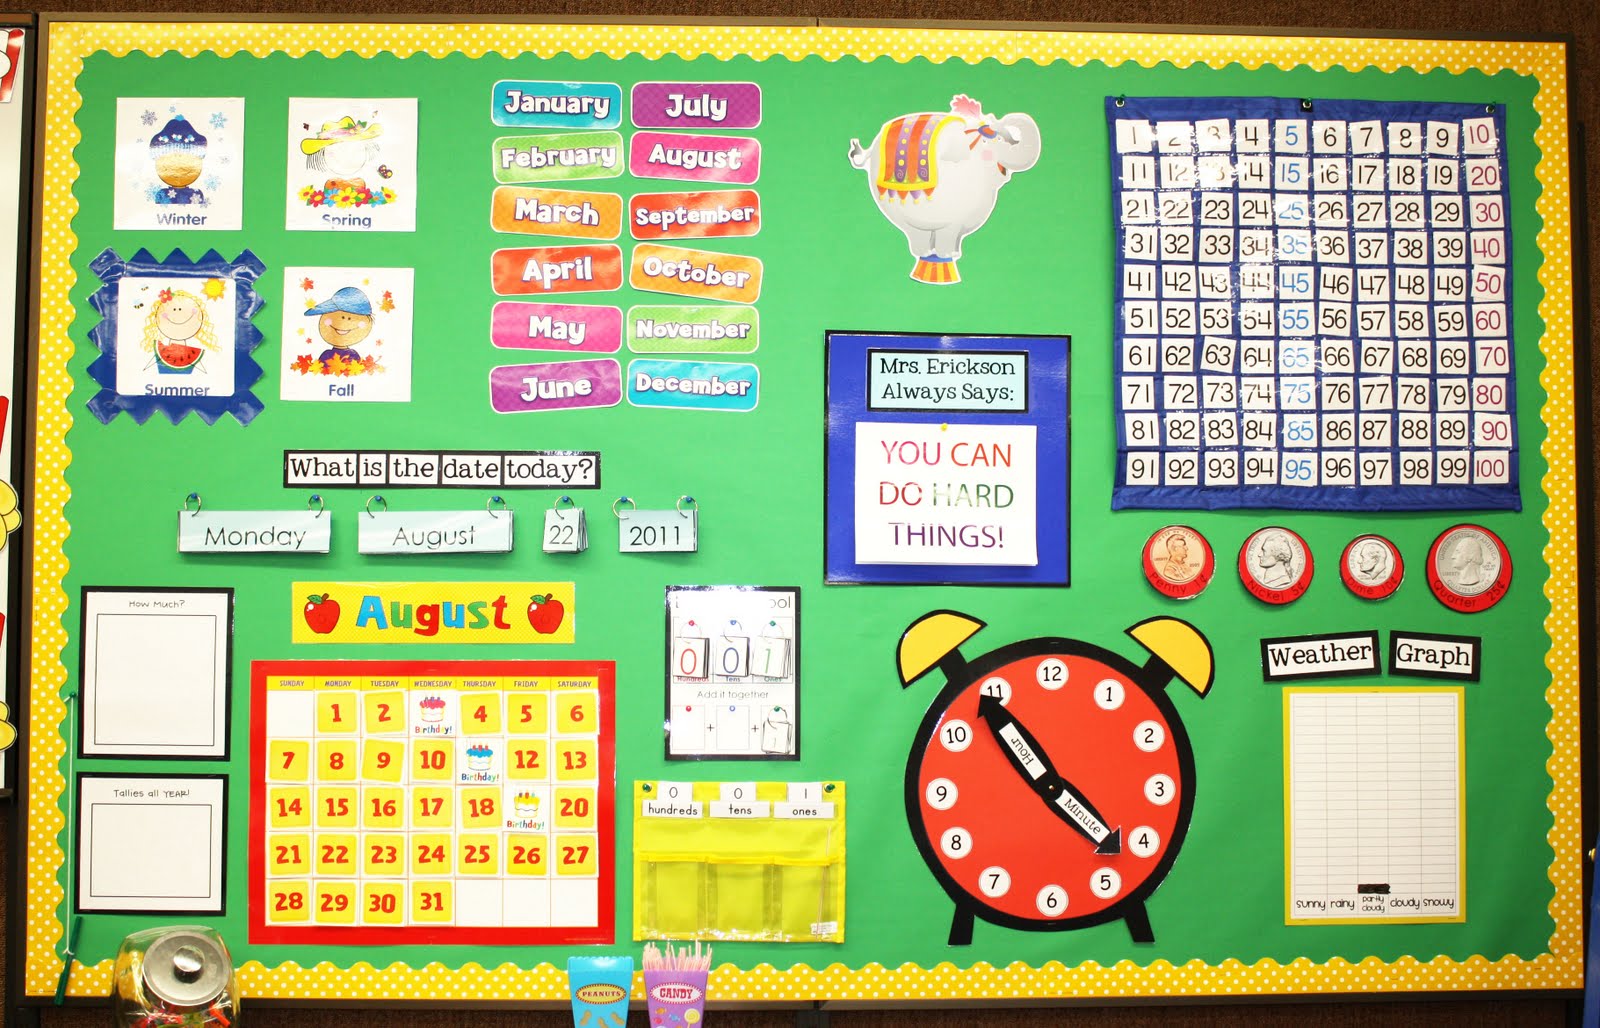 Calendar Chart Preschool